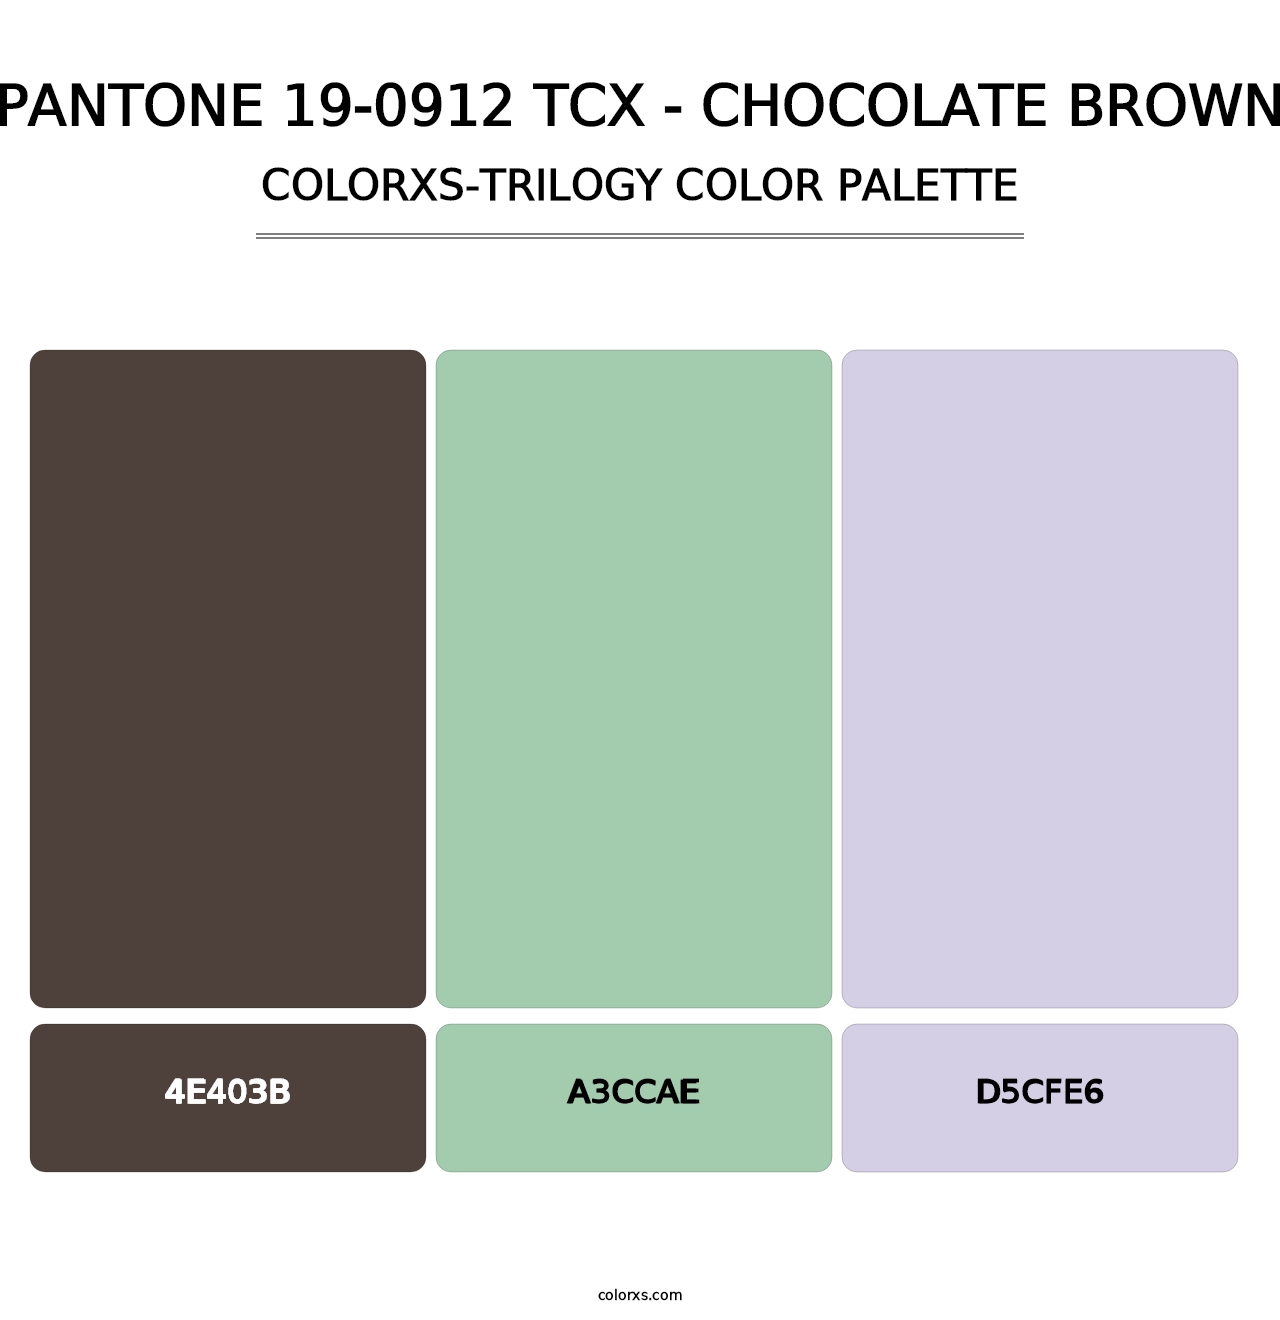 PANTONE 19-0912 TCX - Chocolate Brown - Colorxs Trilogy Palette